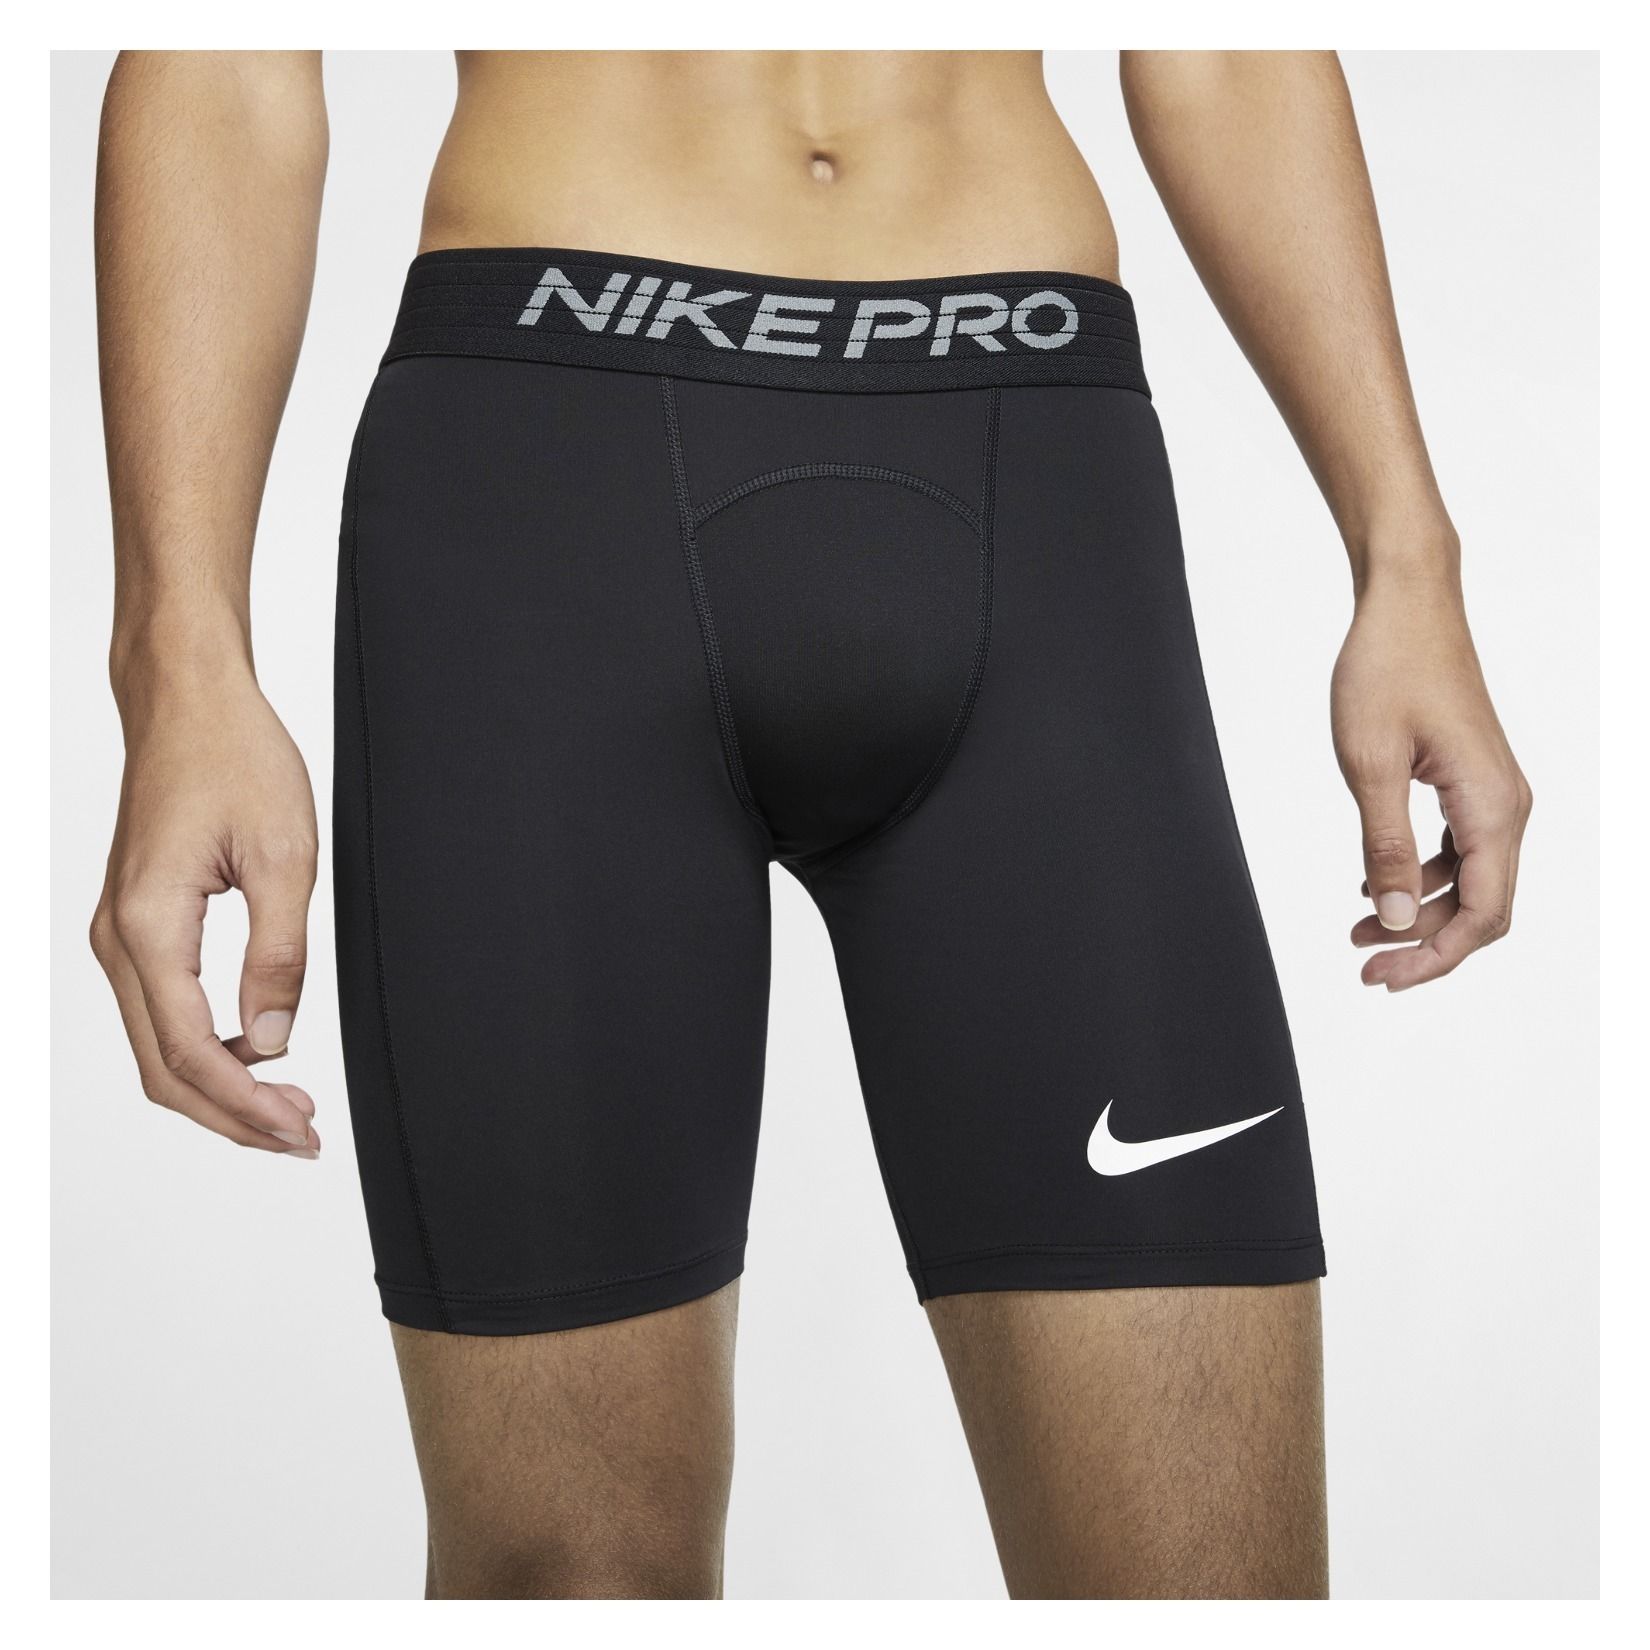 nike pro under shorts